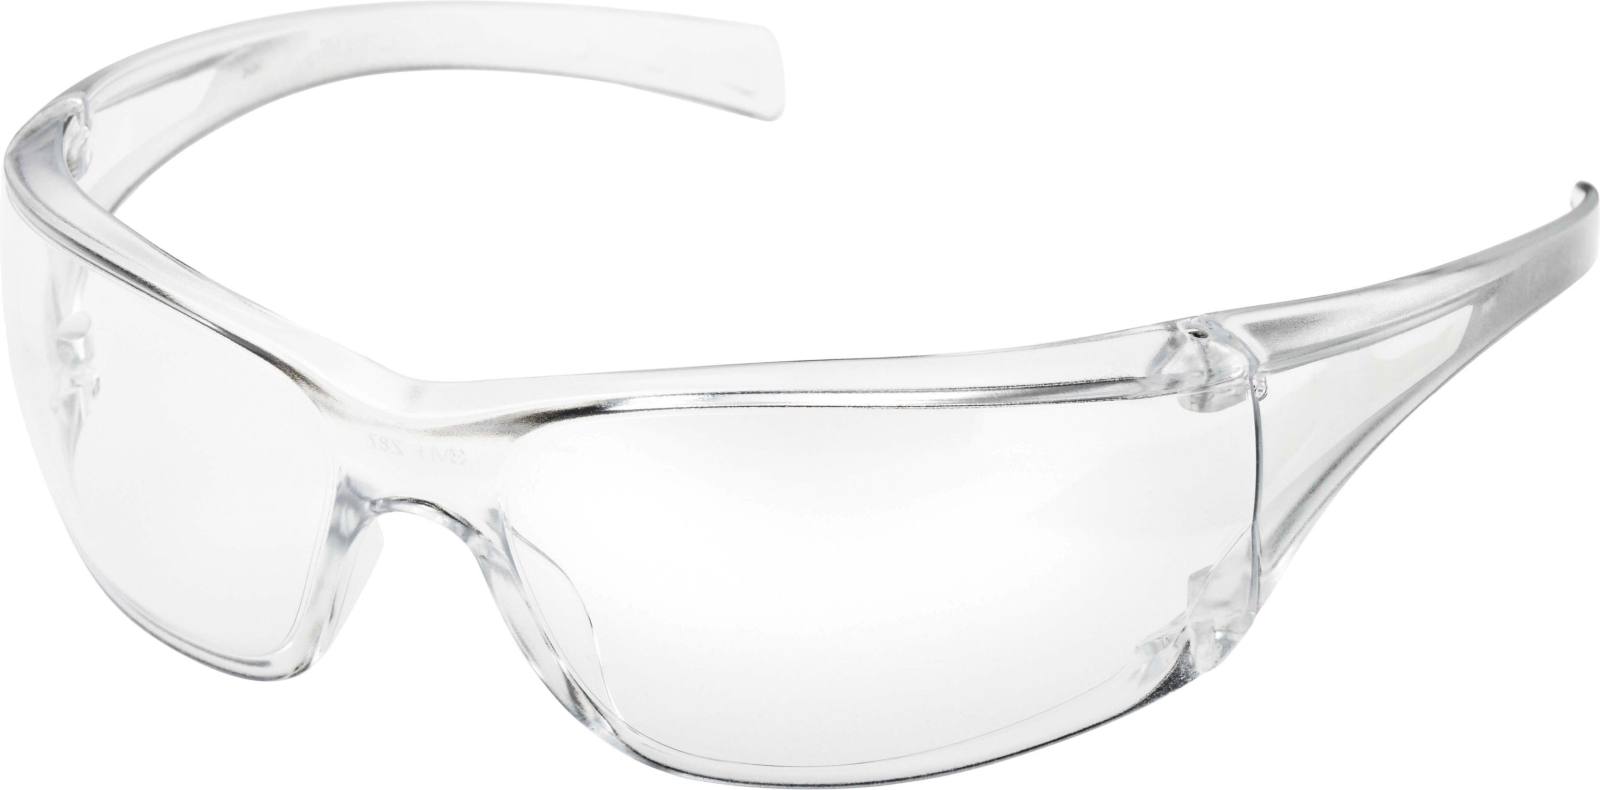 3M Virtua AF Schutzbrille, Antikratz-/Antibeschlag-Beschichtung, graue Scheibe, 715002AF